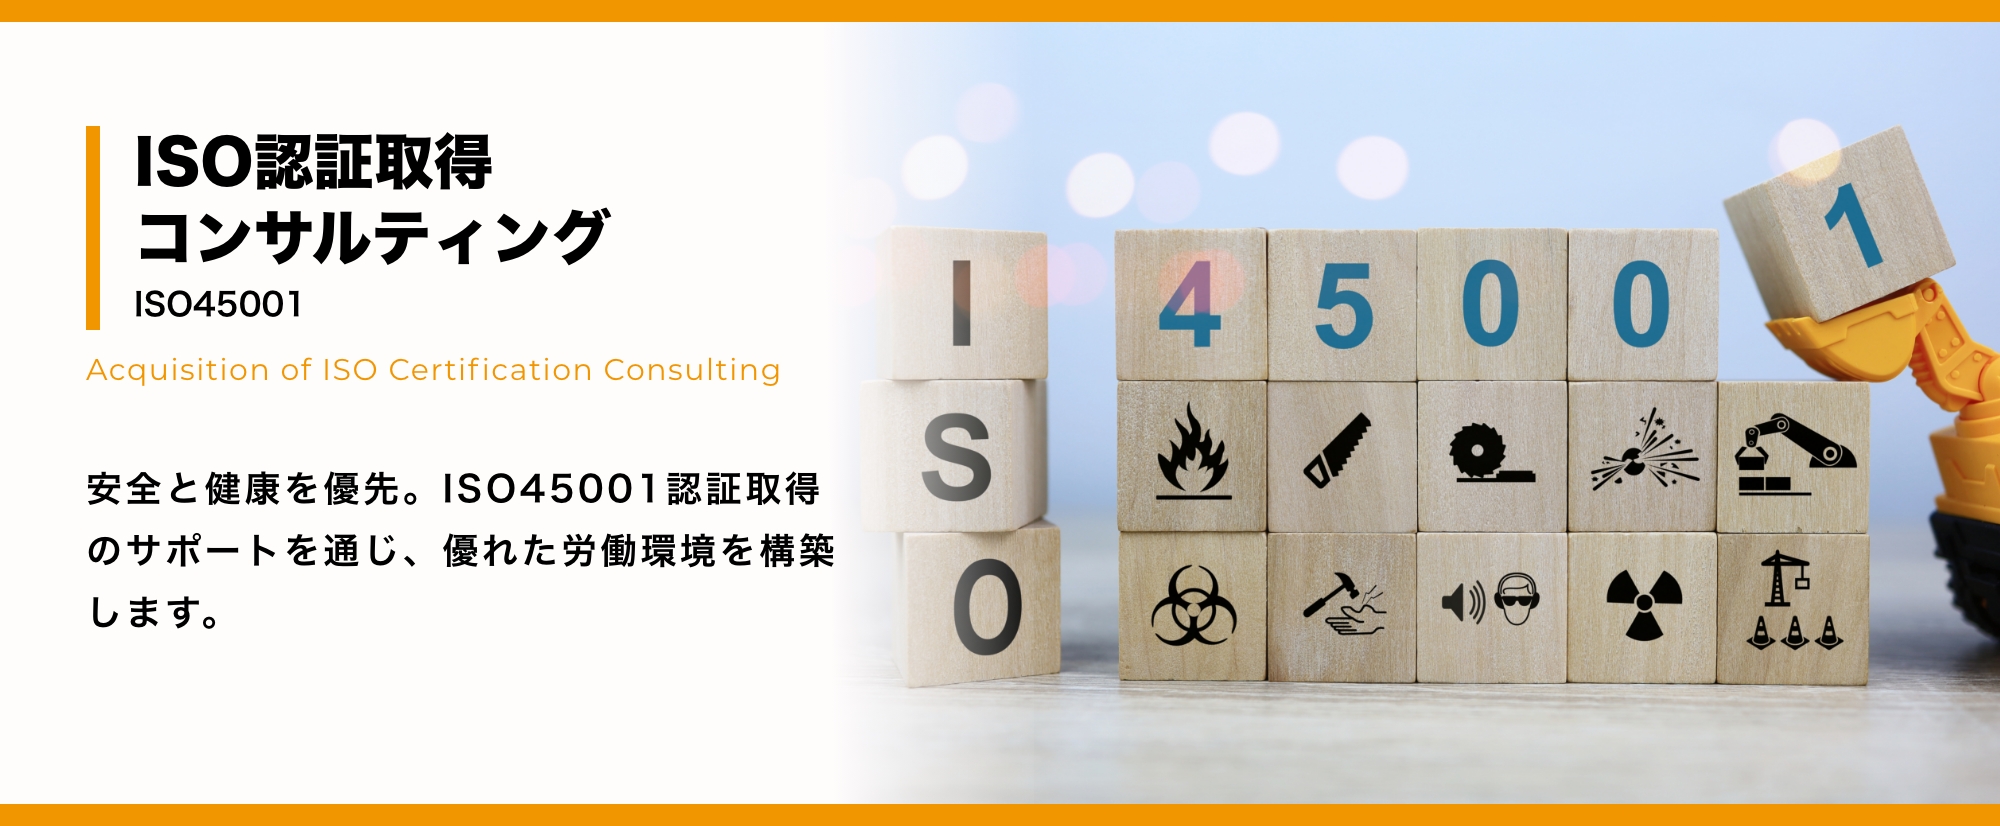 ISO認証取得コンサルティング ISO45001